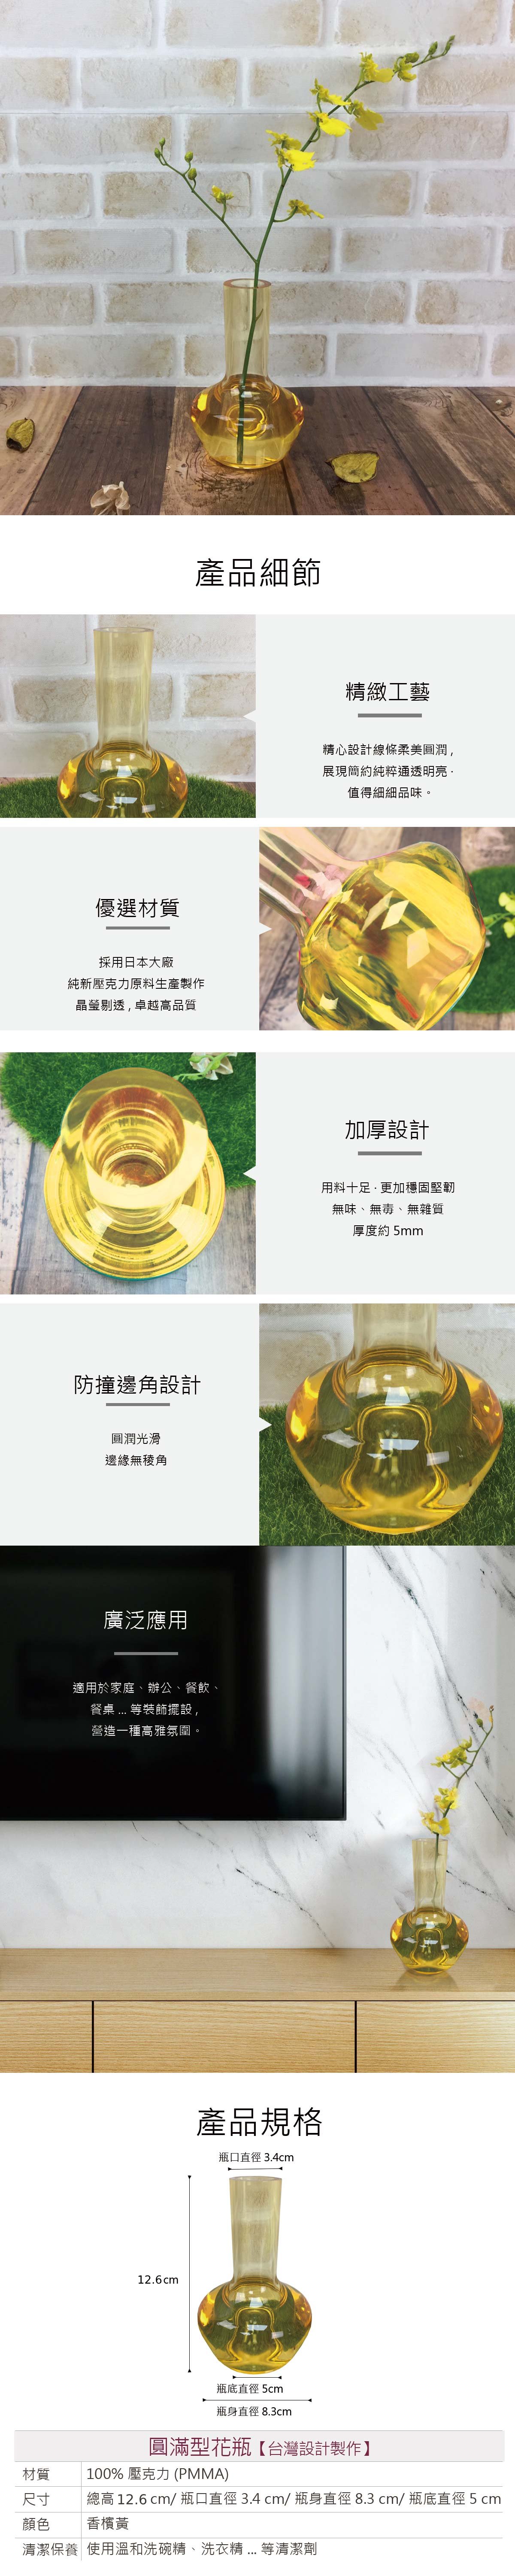 直筒圓弧壓克力花瓶-香檳黃(高12.6cm)